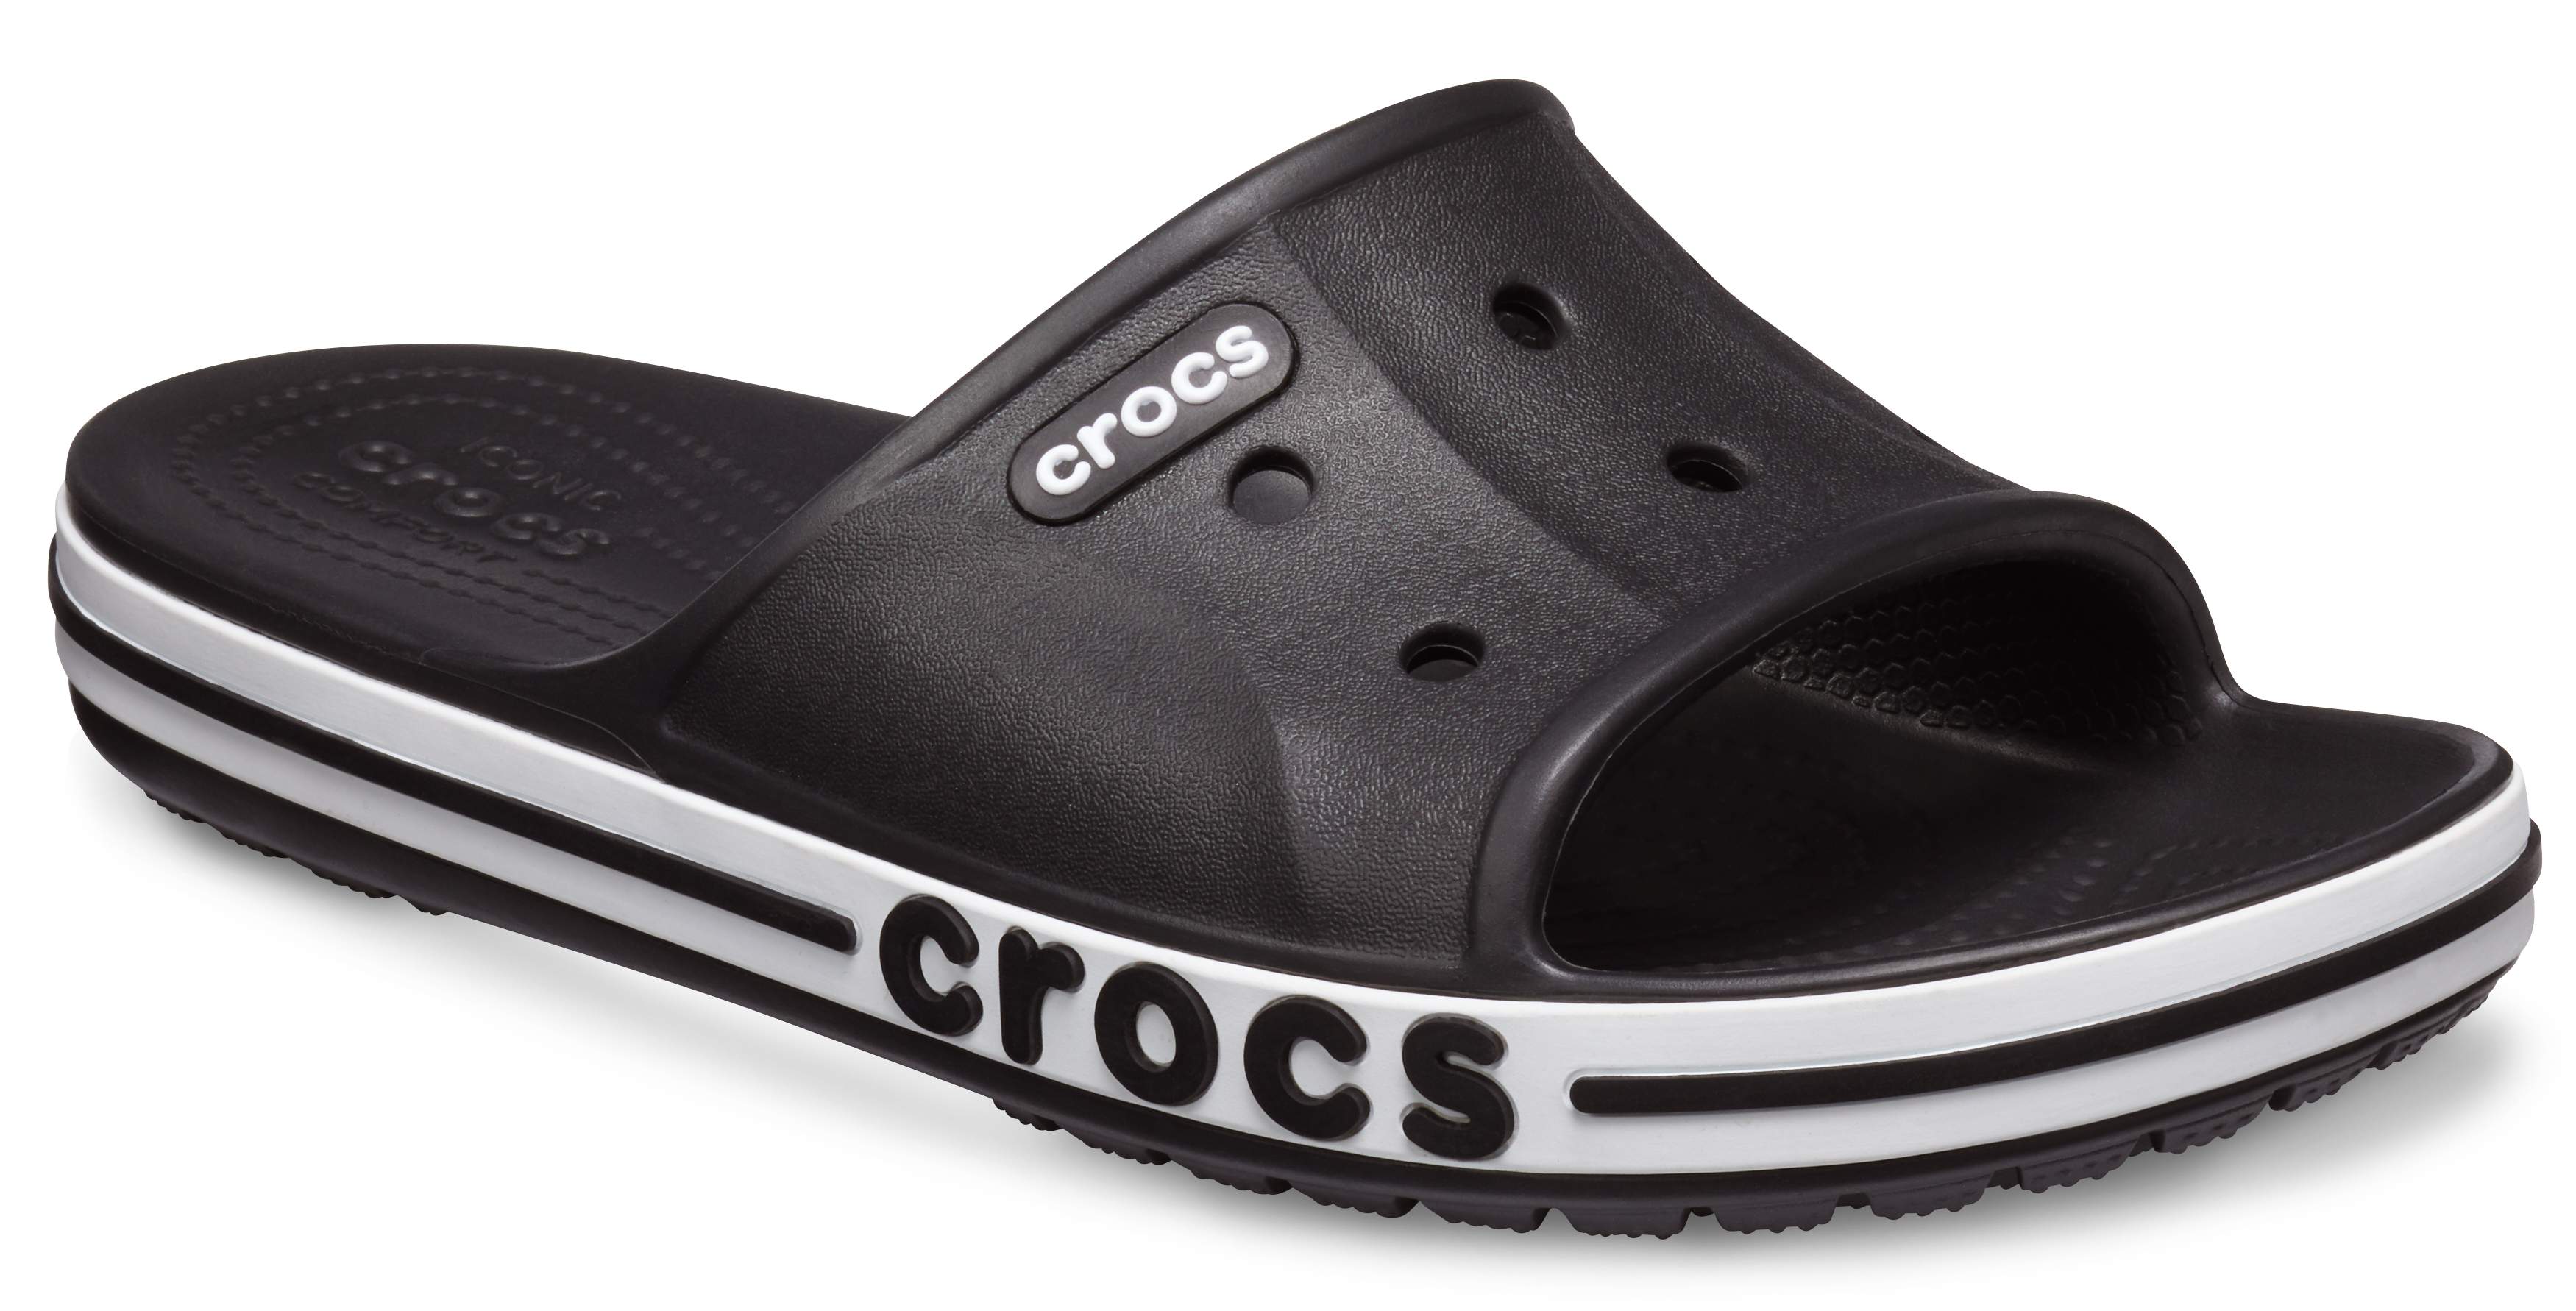 crocs slides white